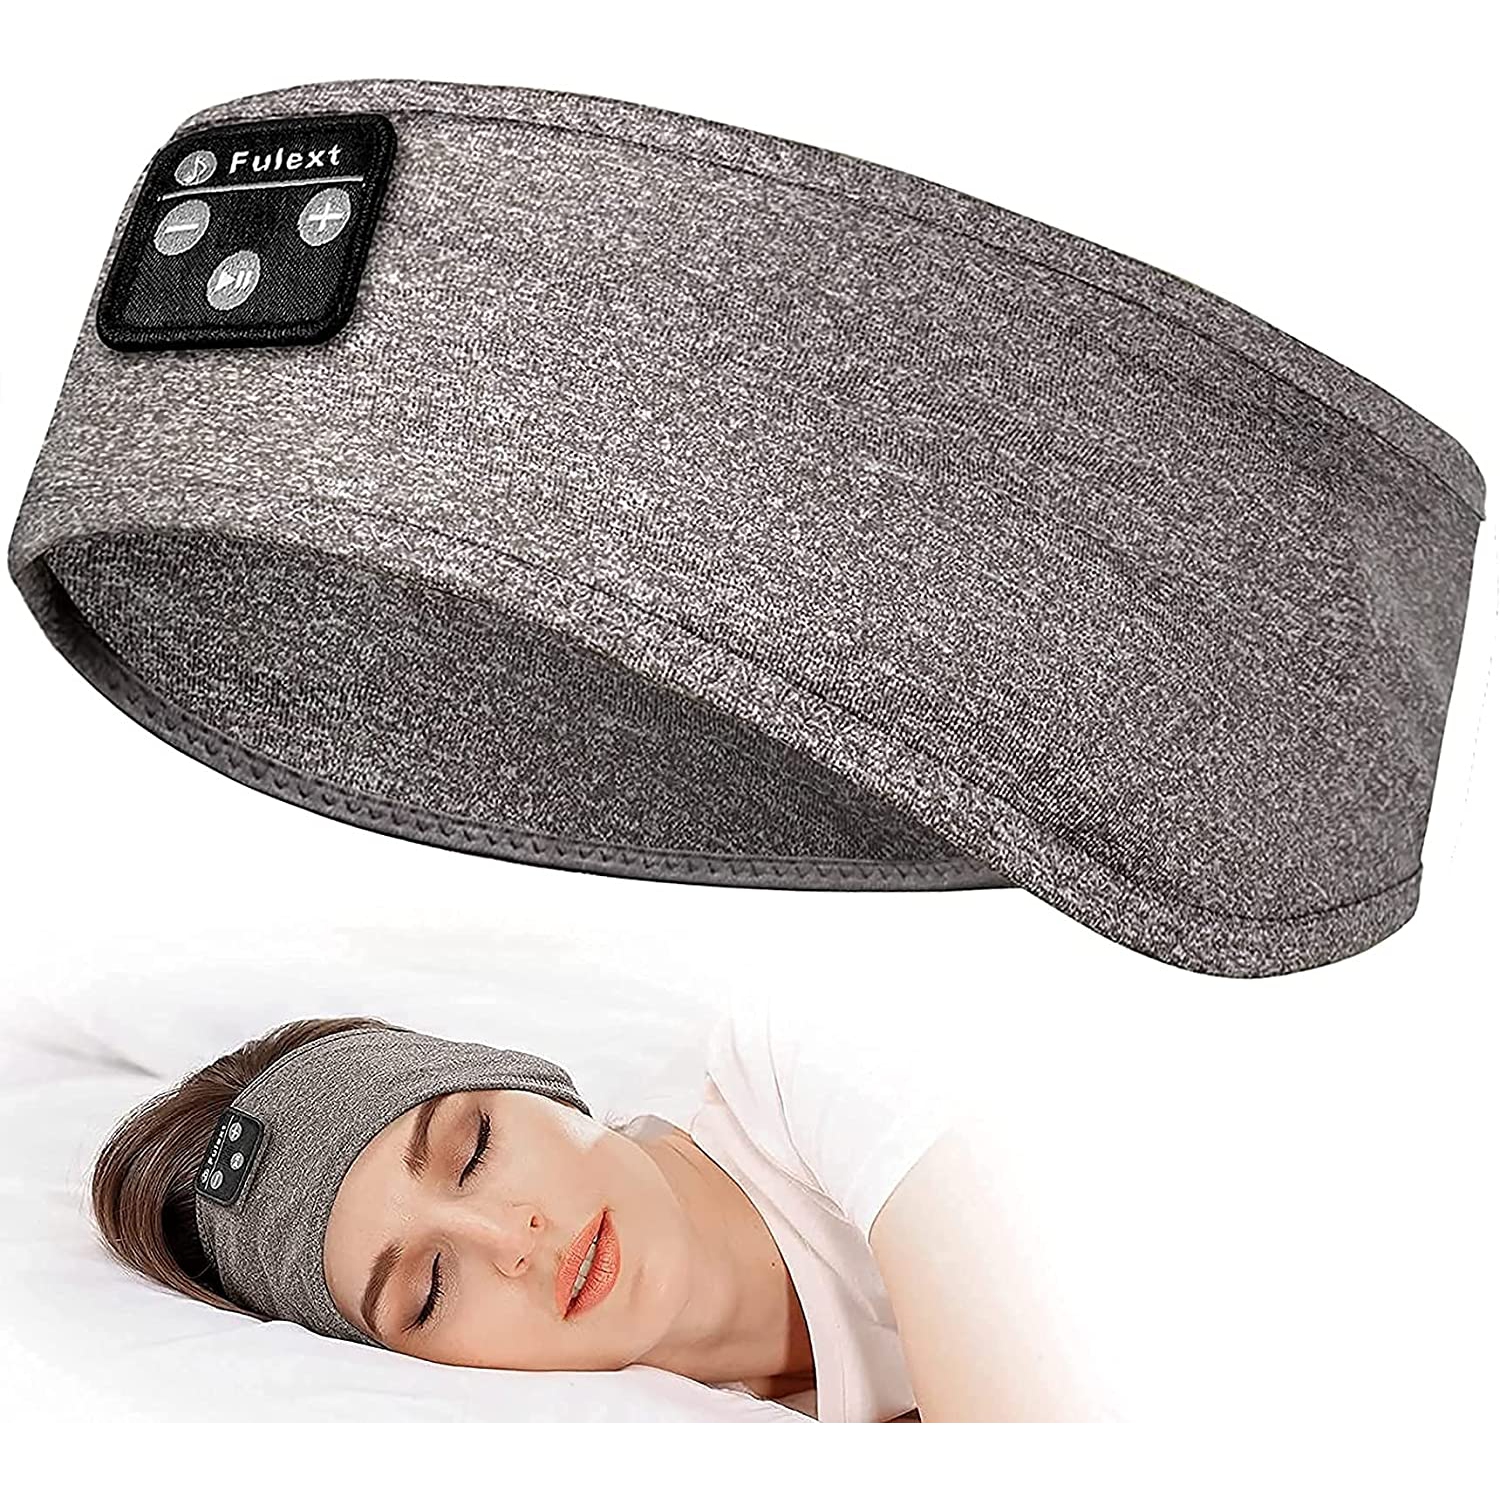 Dolaer Sleeping Headphones Bluetooth Headband, Soft Sleep Headband Headphones Long Time Play Sleep Headphones Bluetooth with Built in Speakers Perfect for Sleep,Workout,Running,Yo